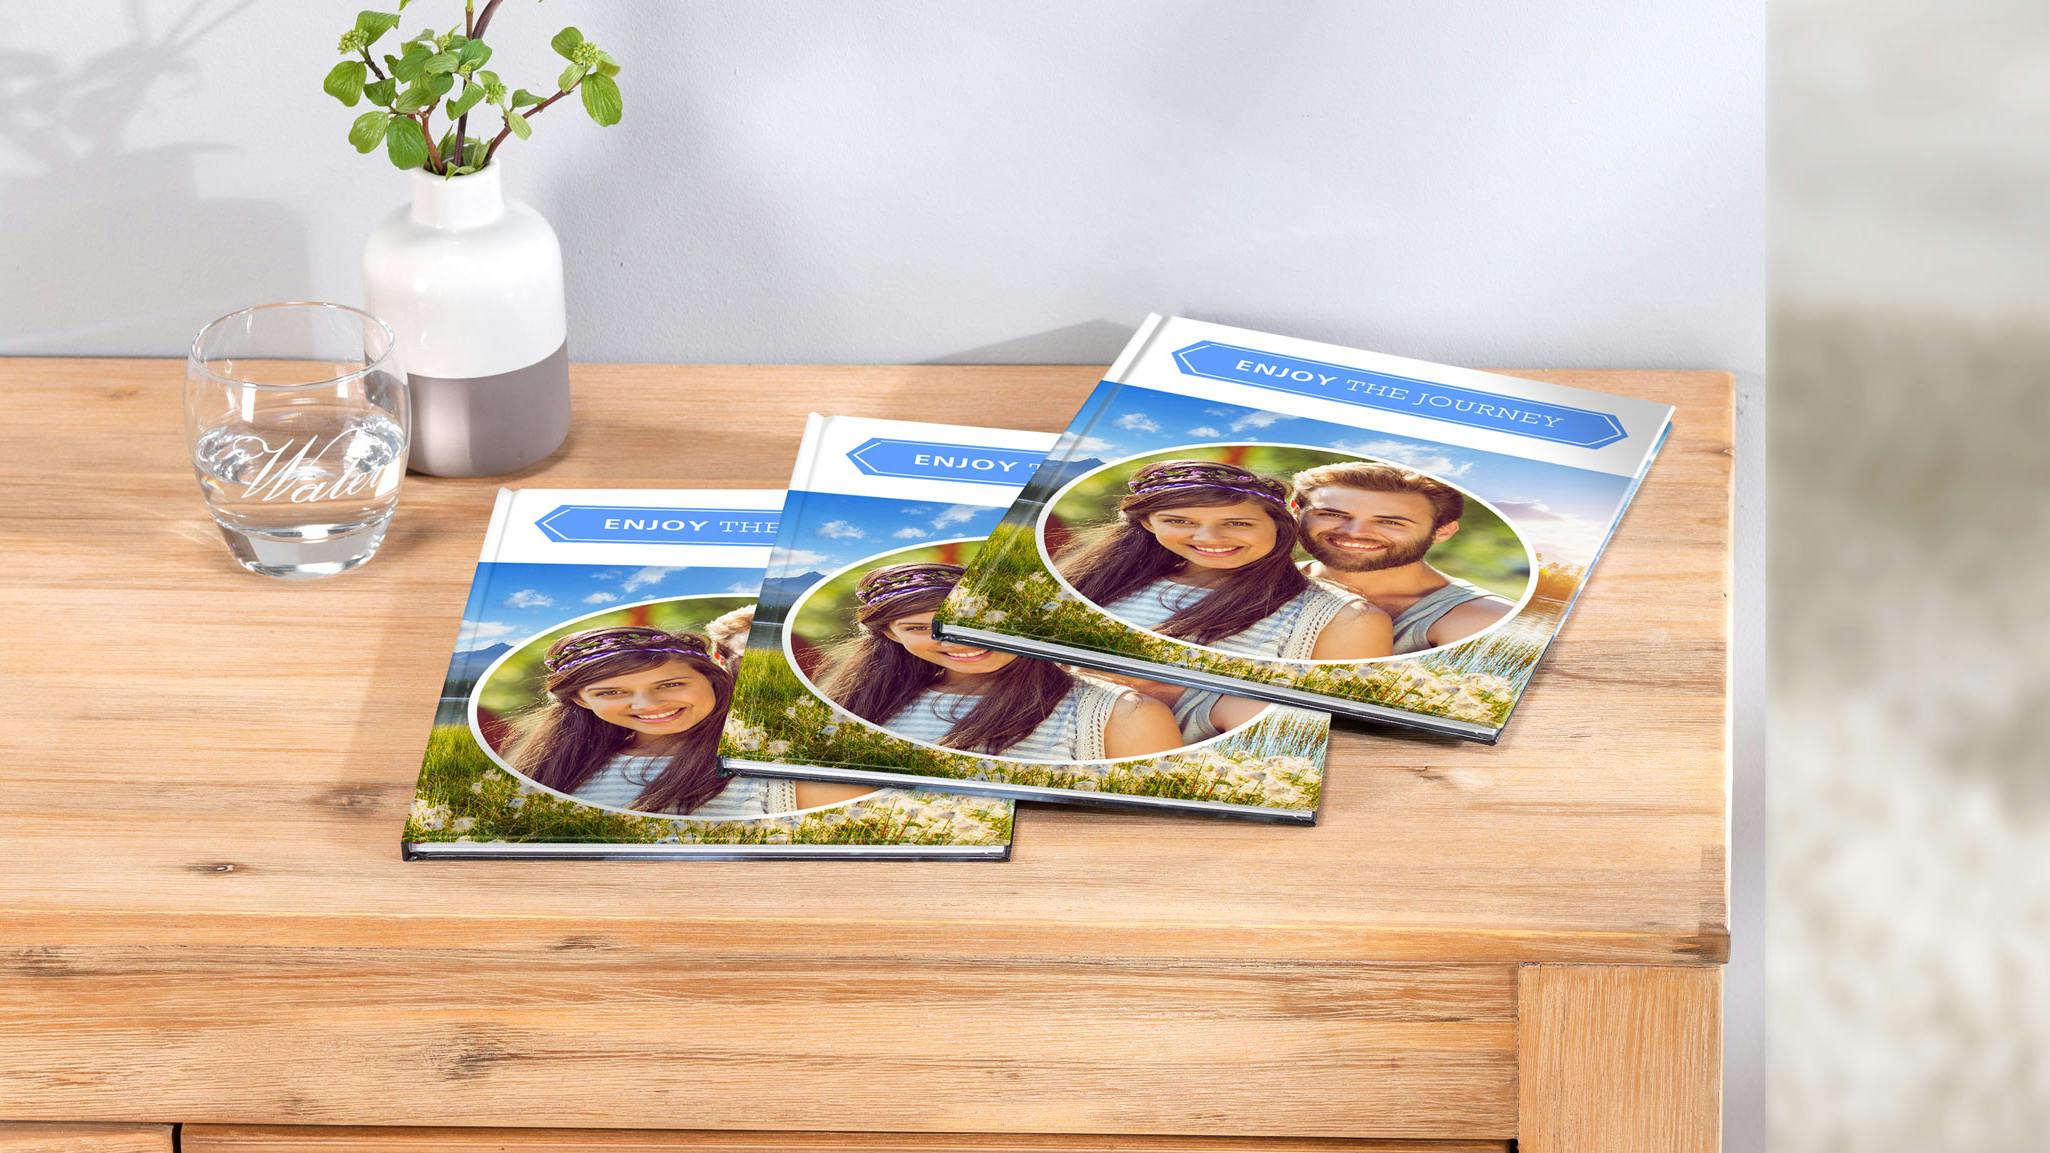 Trois livres photo Pixum portrait avec couverture identique